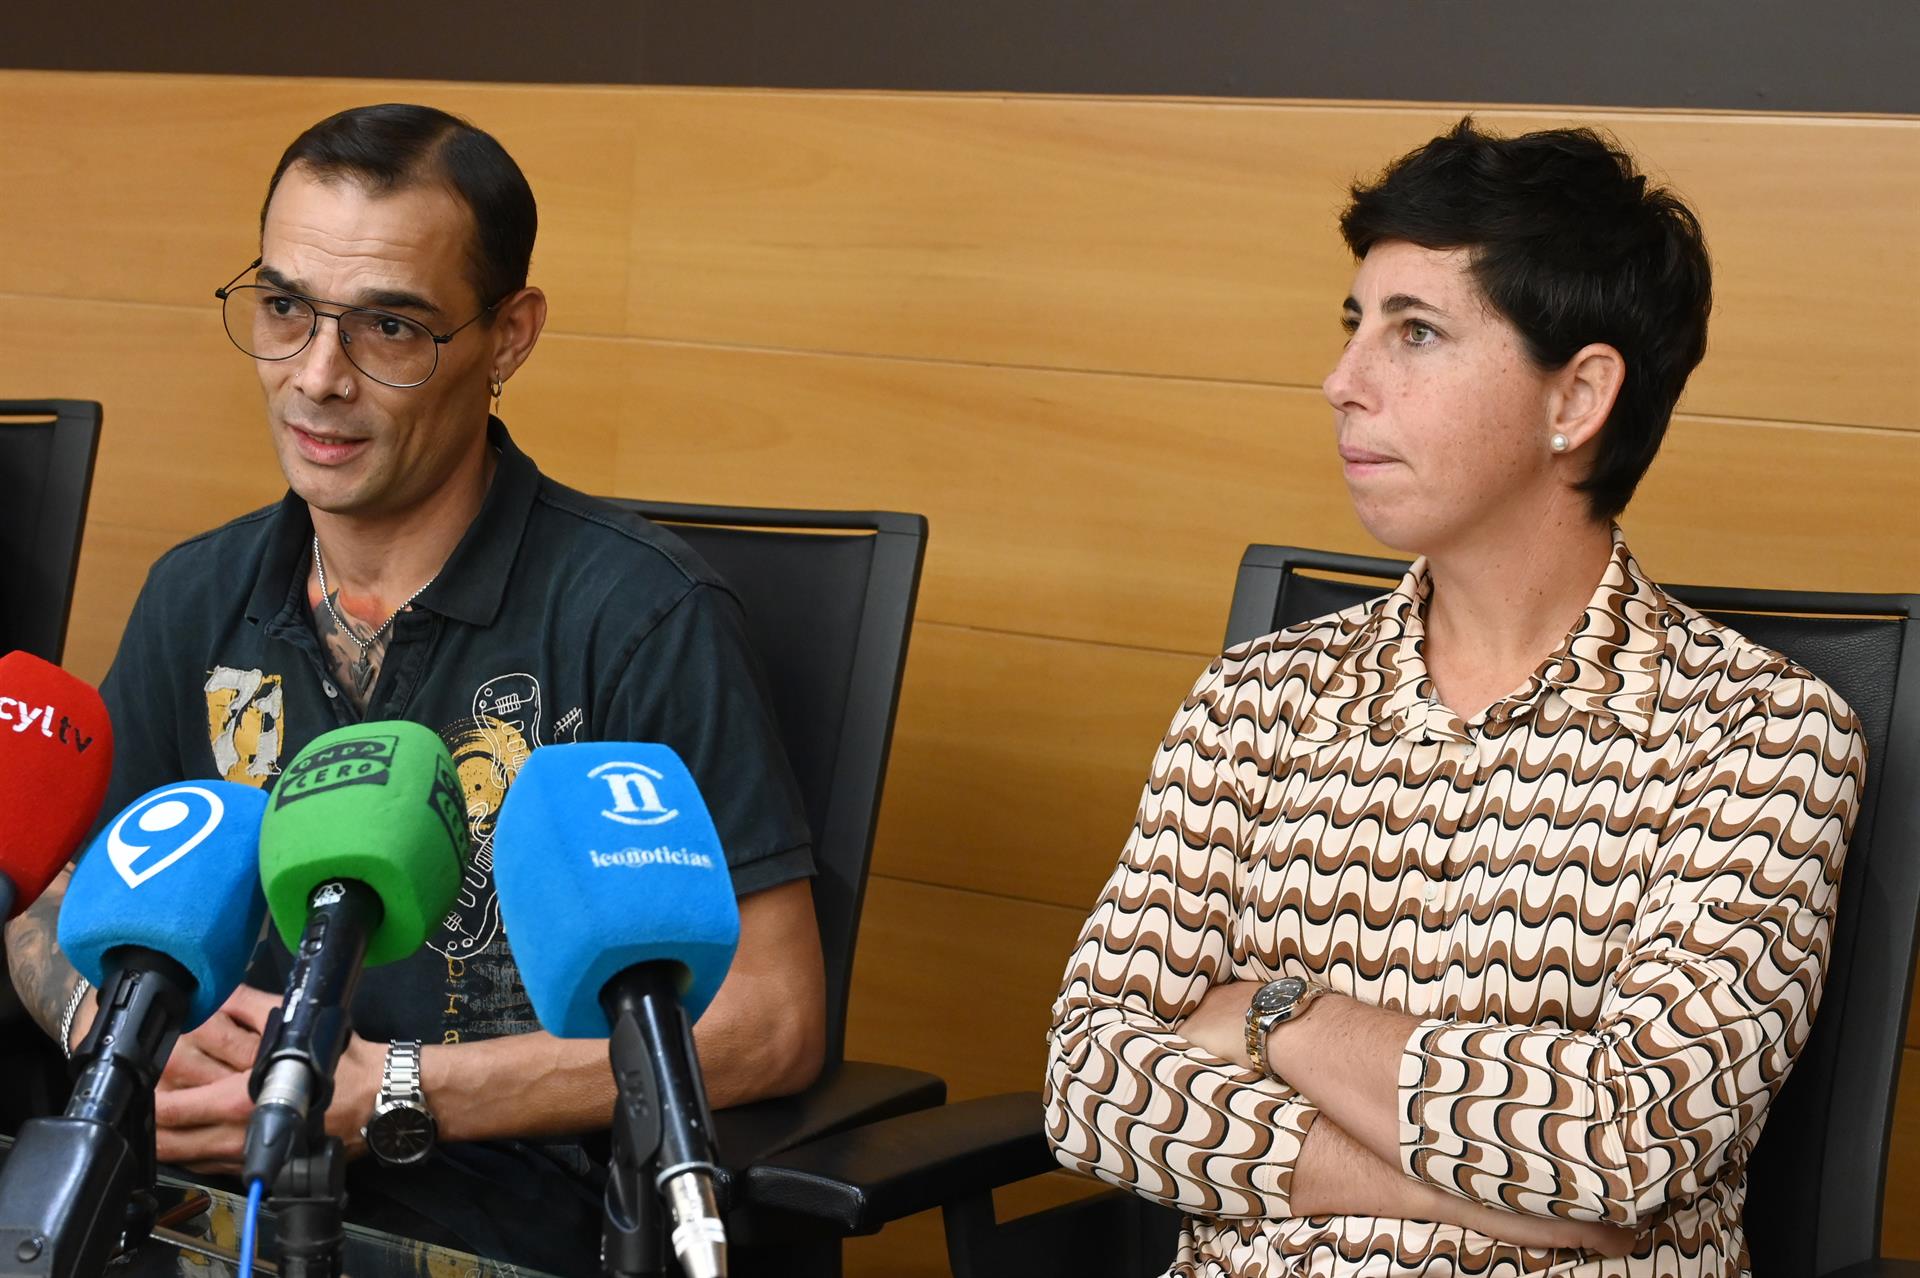 El exgimnasta Gervasio Deferr y la extenista Carla Suárez participan este jueves en León en la segunda jornada del Foro Internacional del Deporte (FID) Castilla y León 2022. EFE/J.Casares
